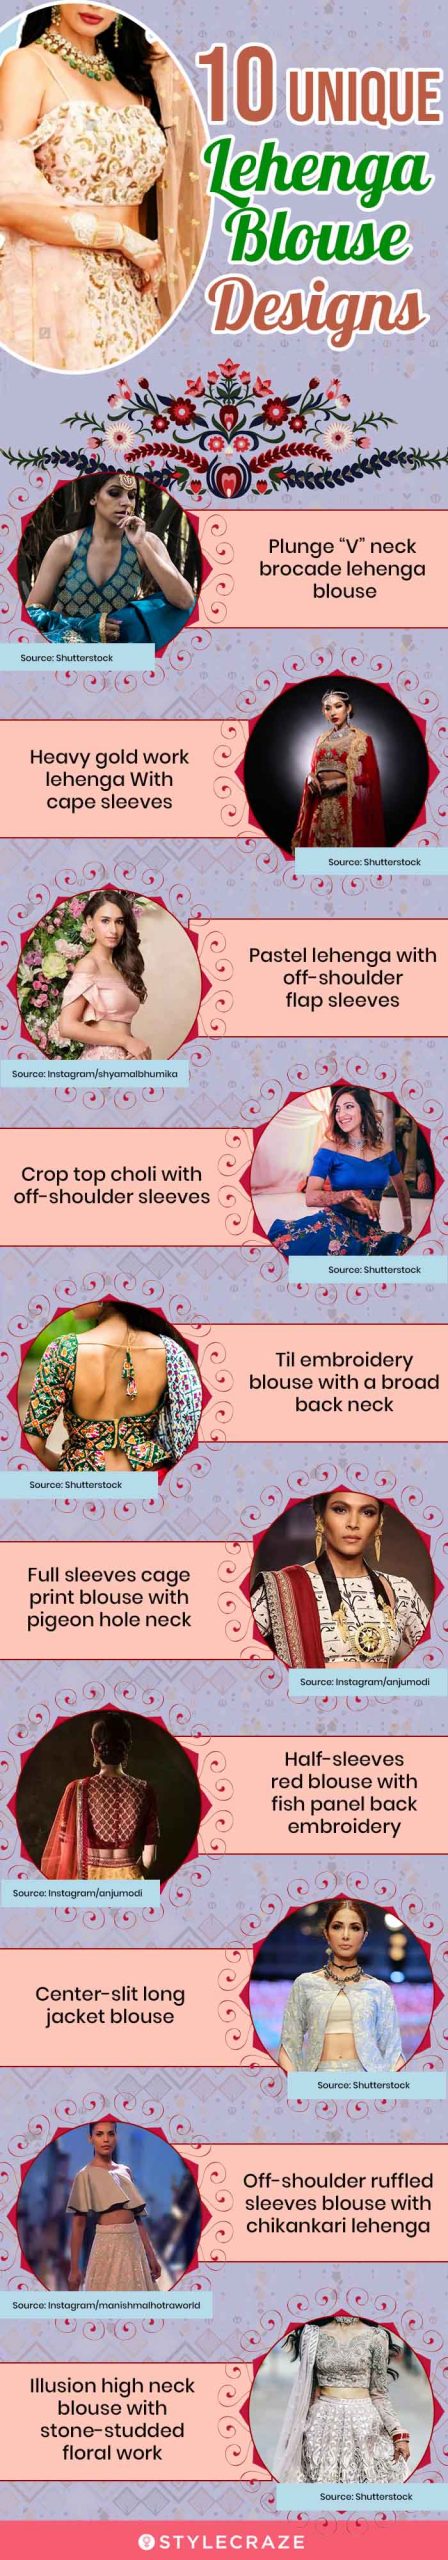 10 unique lehenga blouse designs (infographic)